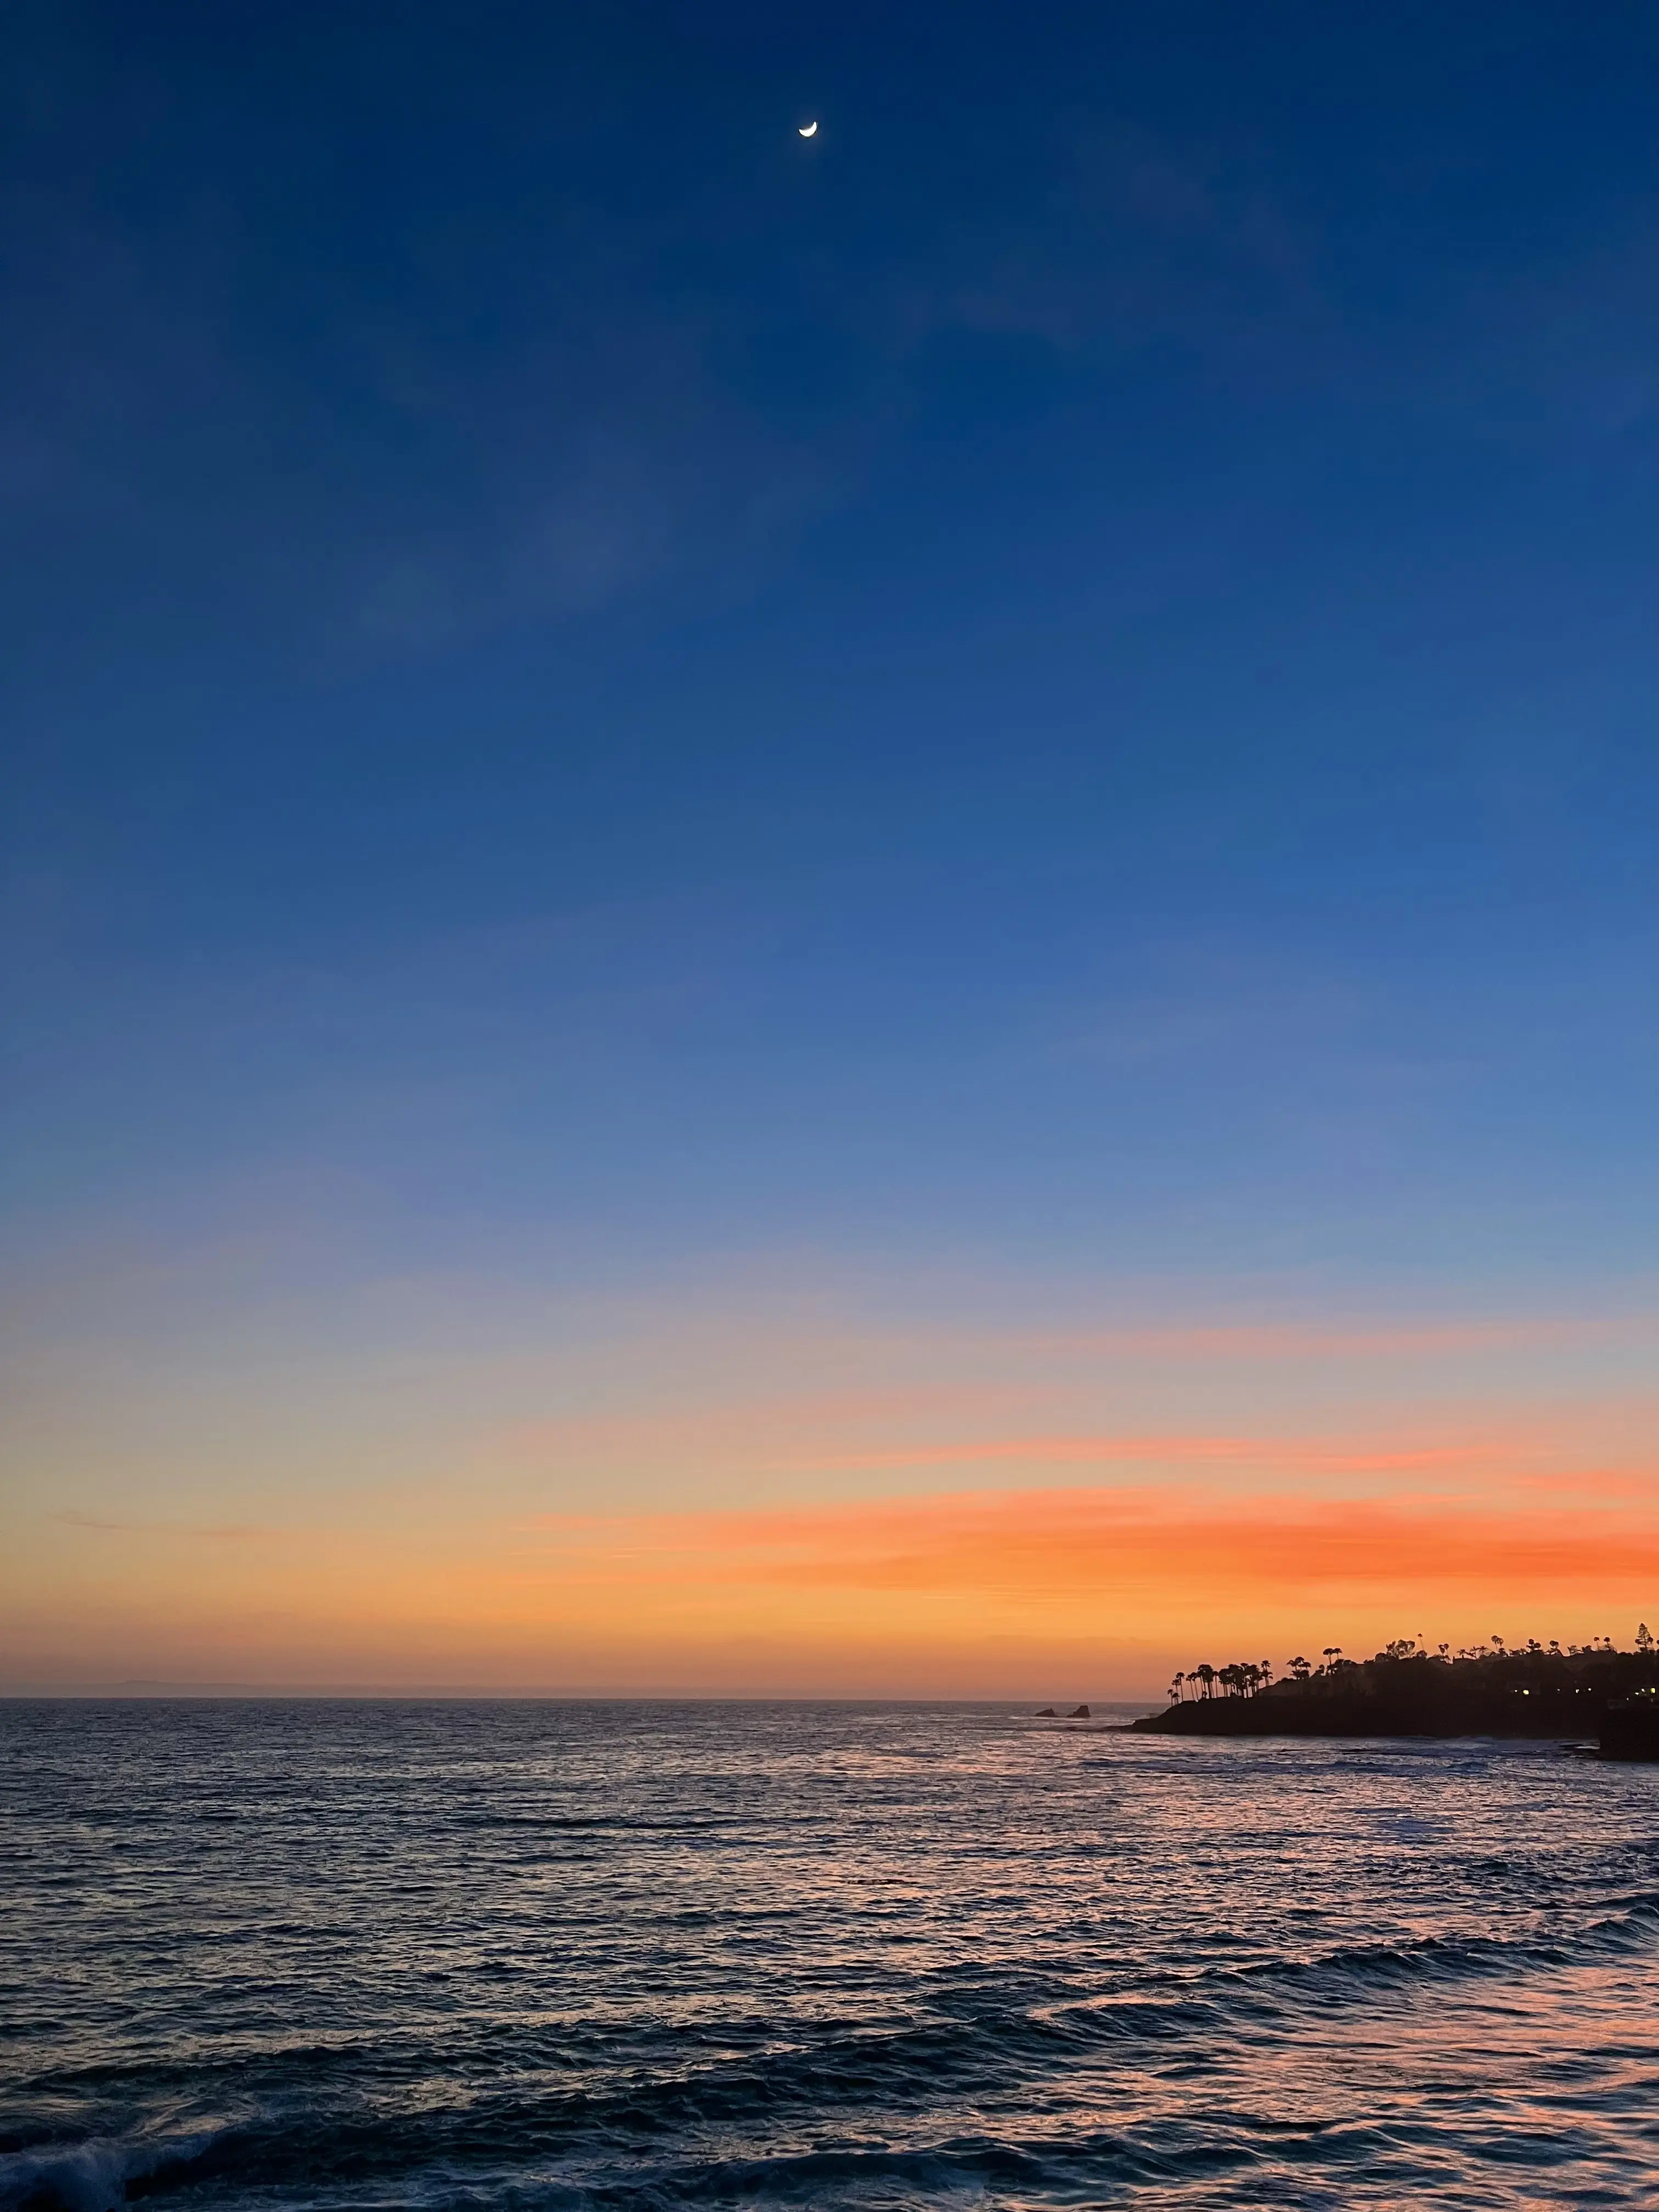 Orange sunset at twilight overlooking the ocean